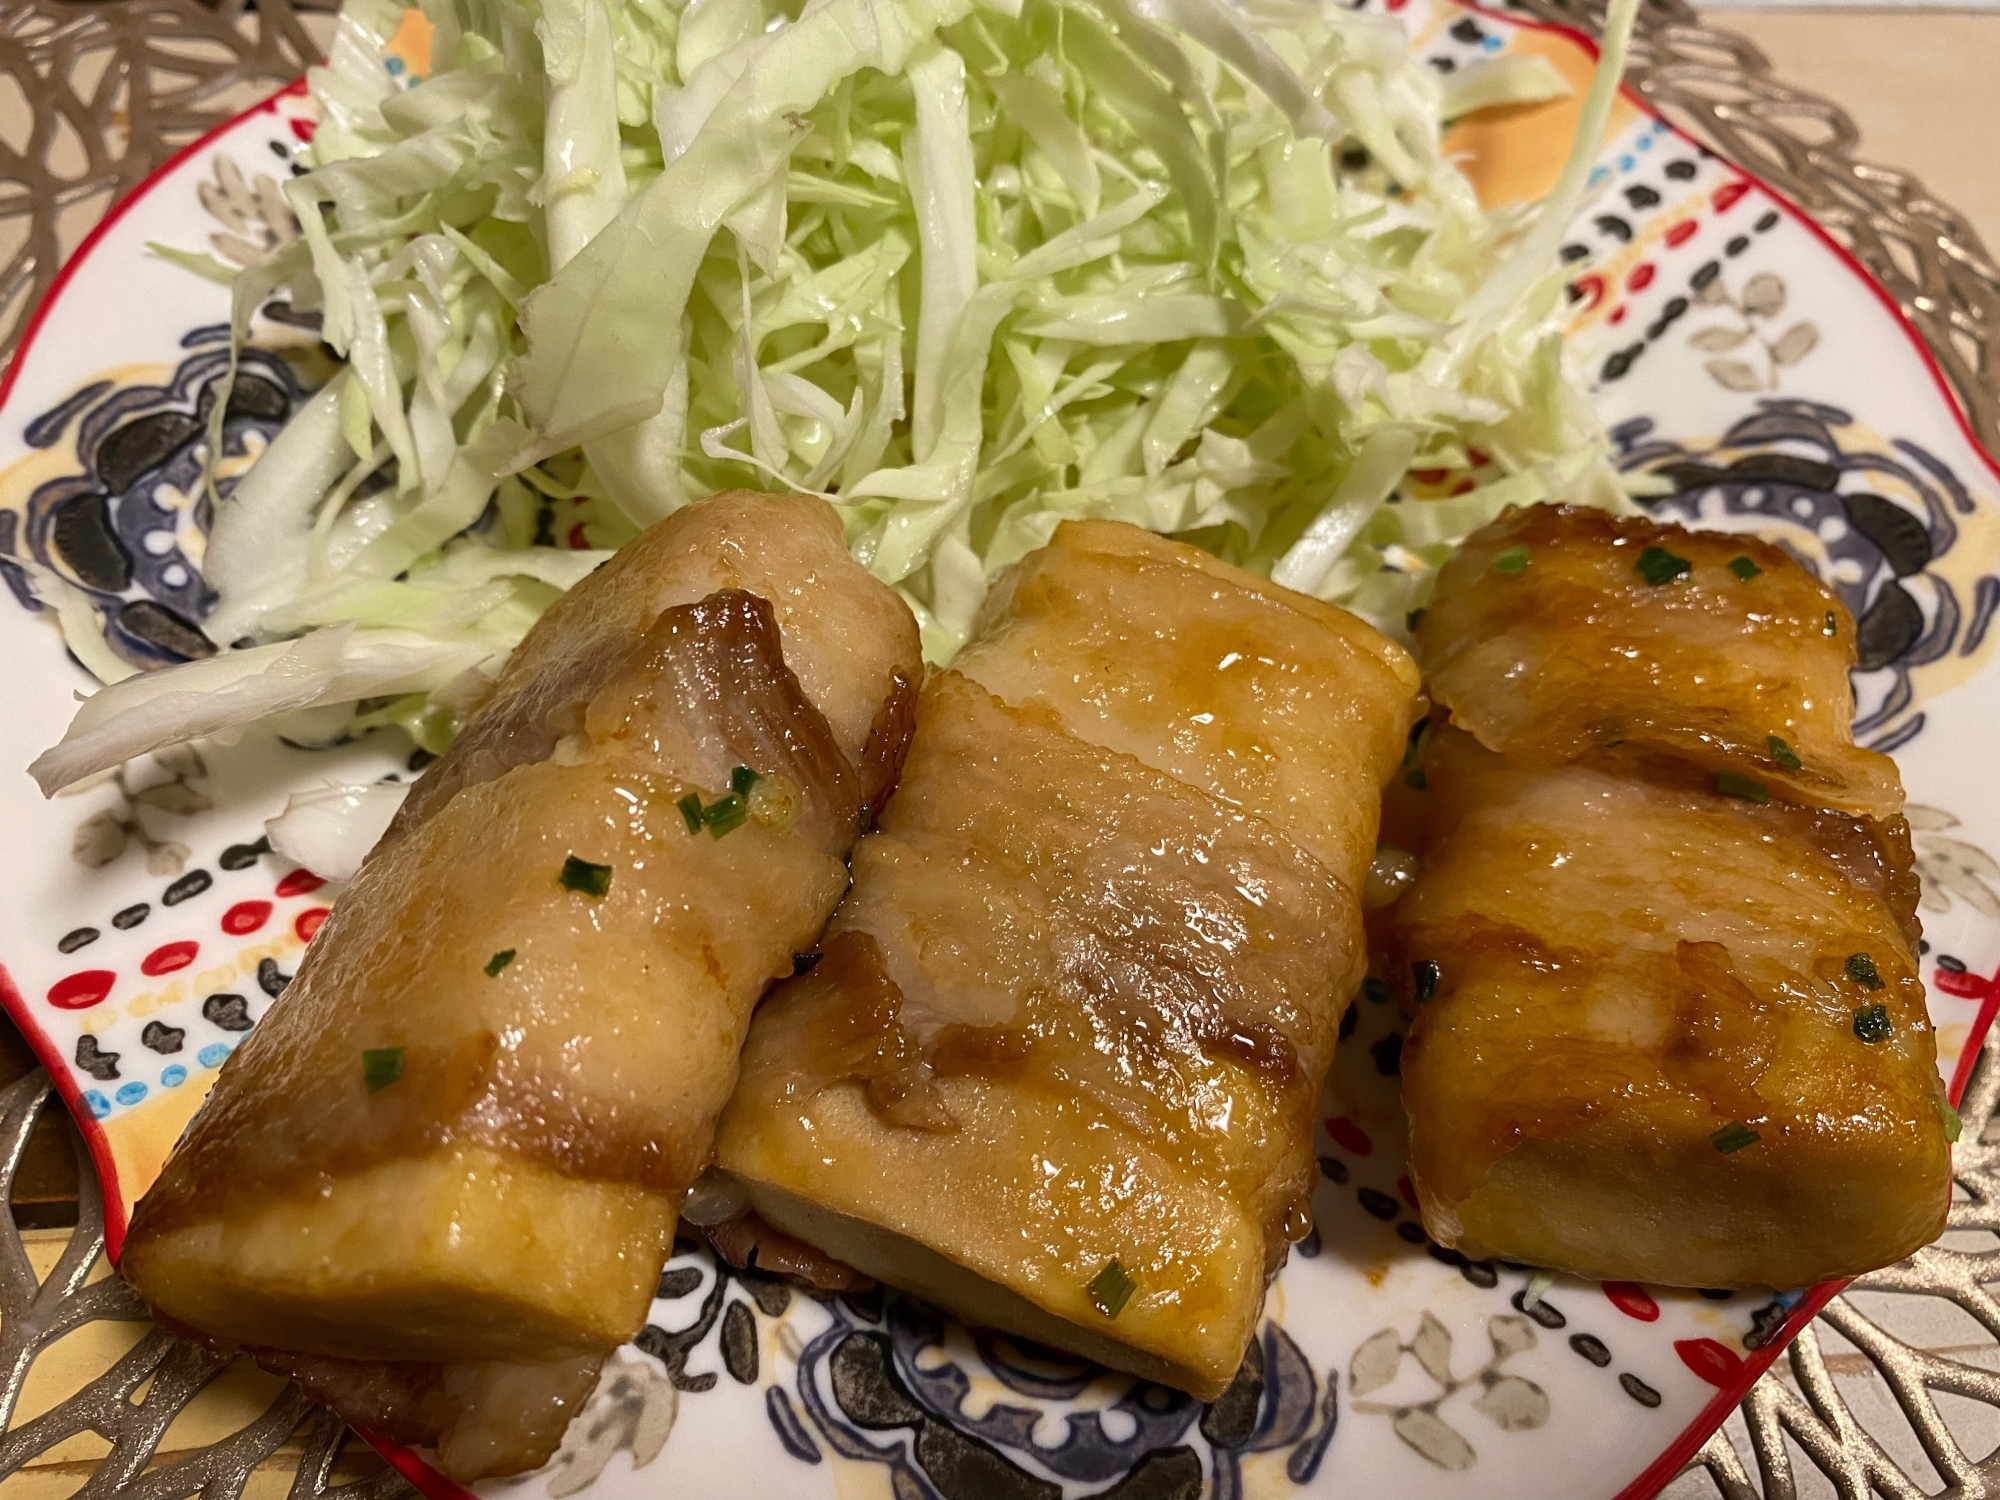 高野豆腐でヘルシー☆豚肉チーズ巻き